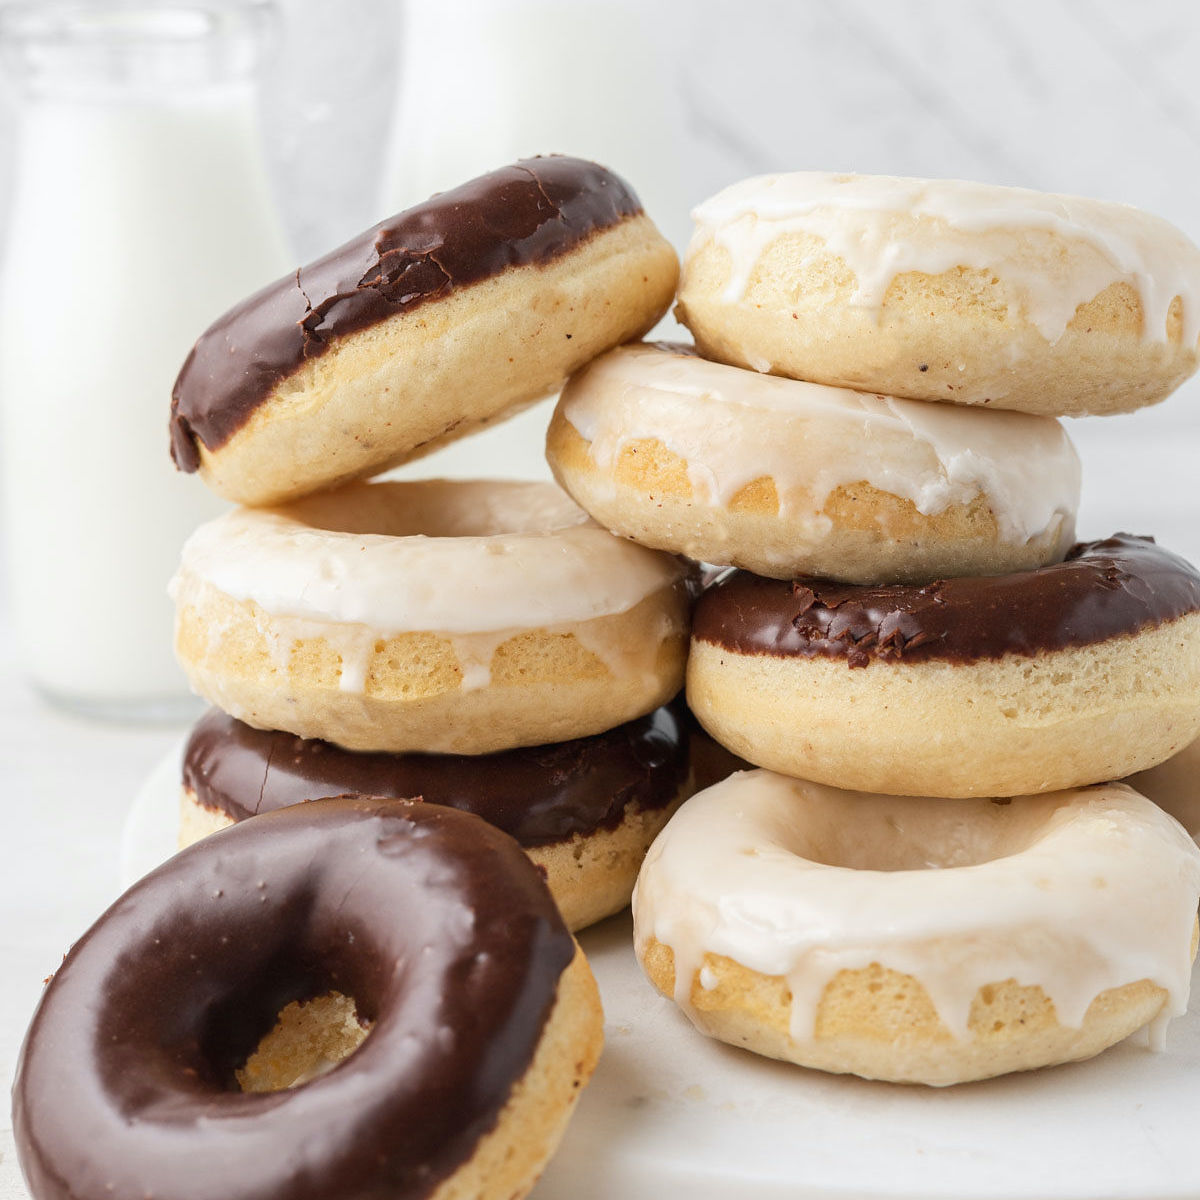 Gedeeltelijk Parelachtig overschot Homemade Baked Donut Recipe - Live Well Bake Often